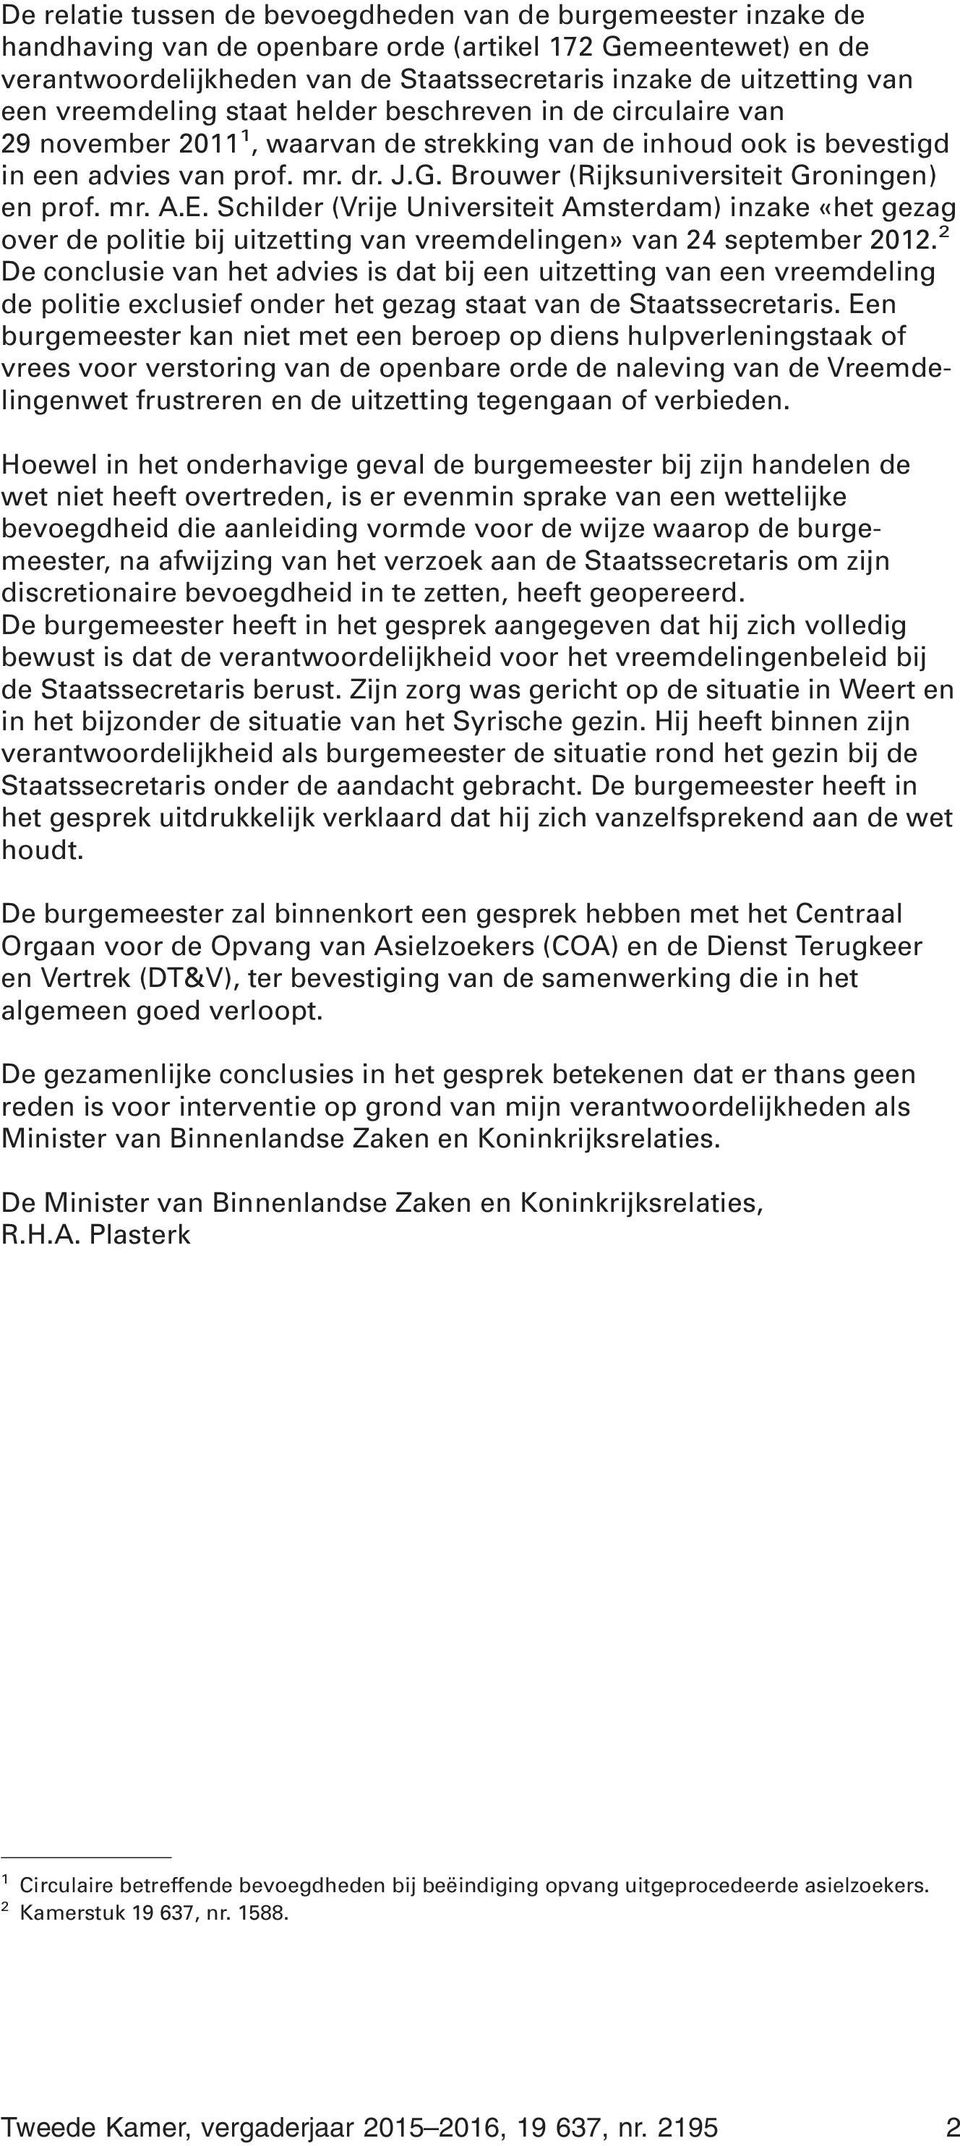 Brouwer (Rijksuniversiteit Groningen) en prof. mr. A.E. Schilder (Vrije Universiteit Amsterdam) inzake «het gezag over de politie bij uitzetting van vreemdelingen» van 24 september 2012.